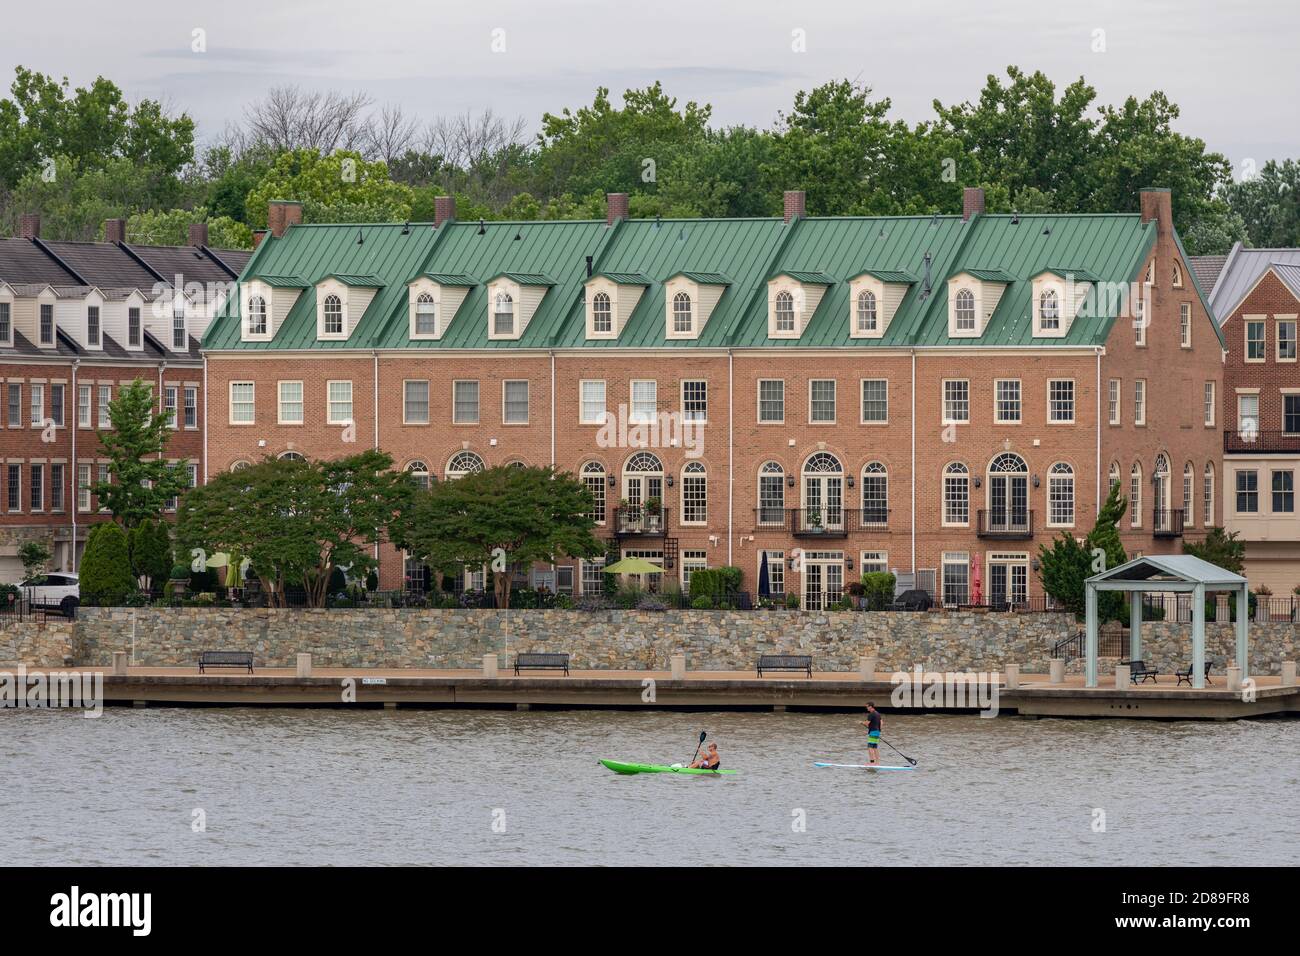 Eine Reihe von Häusern mit einem markanten grünen Dach umreiht die Potomac Waterfront in Alexandria in Virginia. Stockfoto